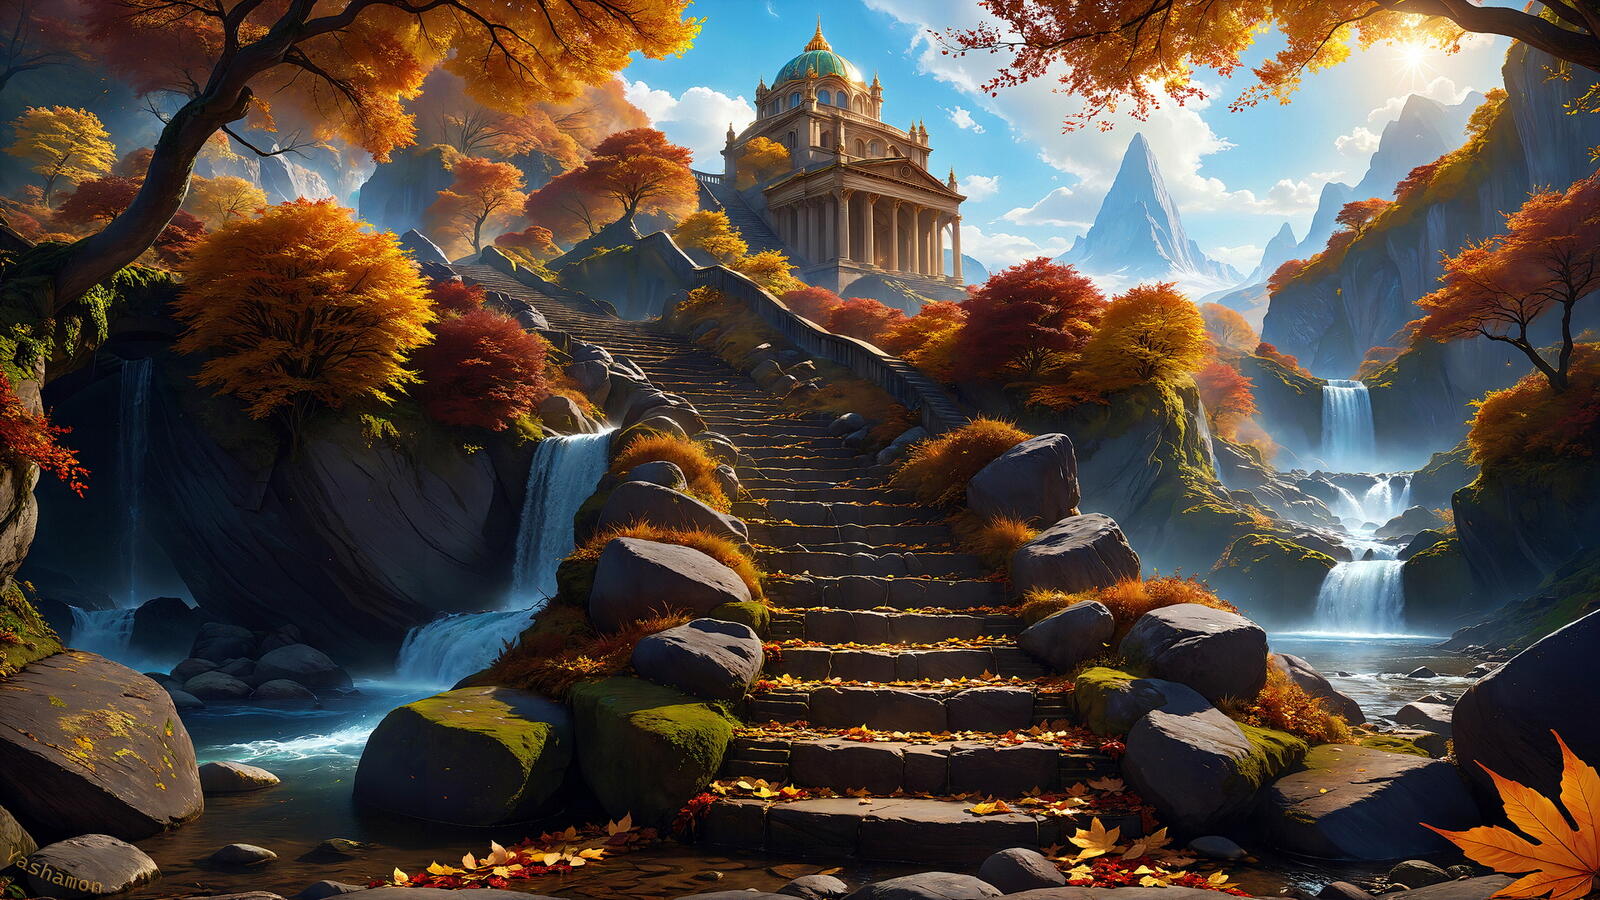 Бесплатное фото Храм в горах и каменная лестница